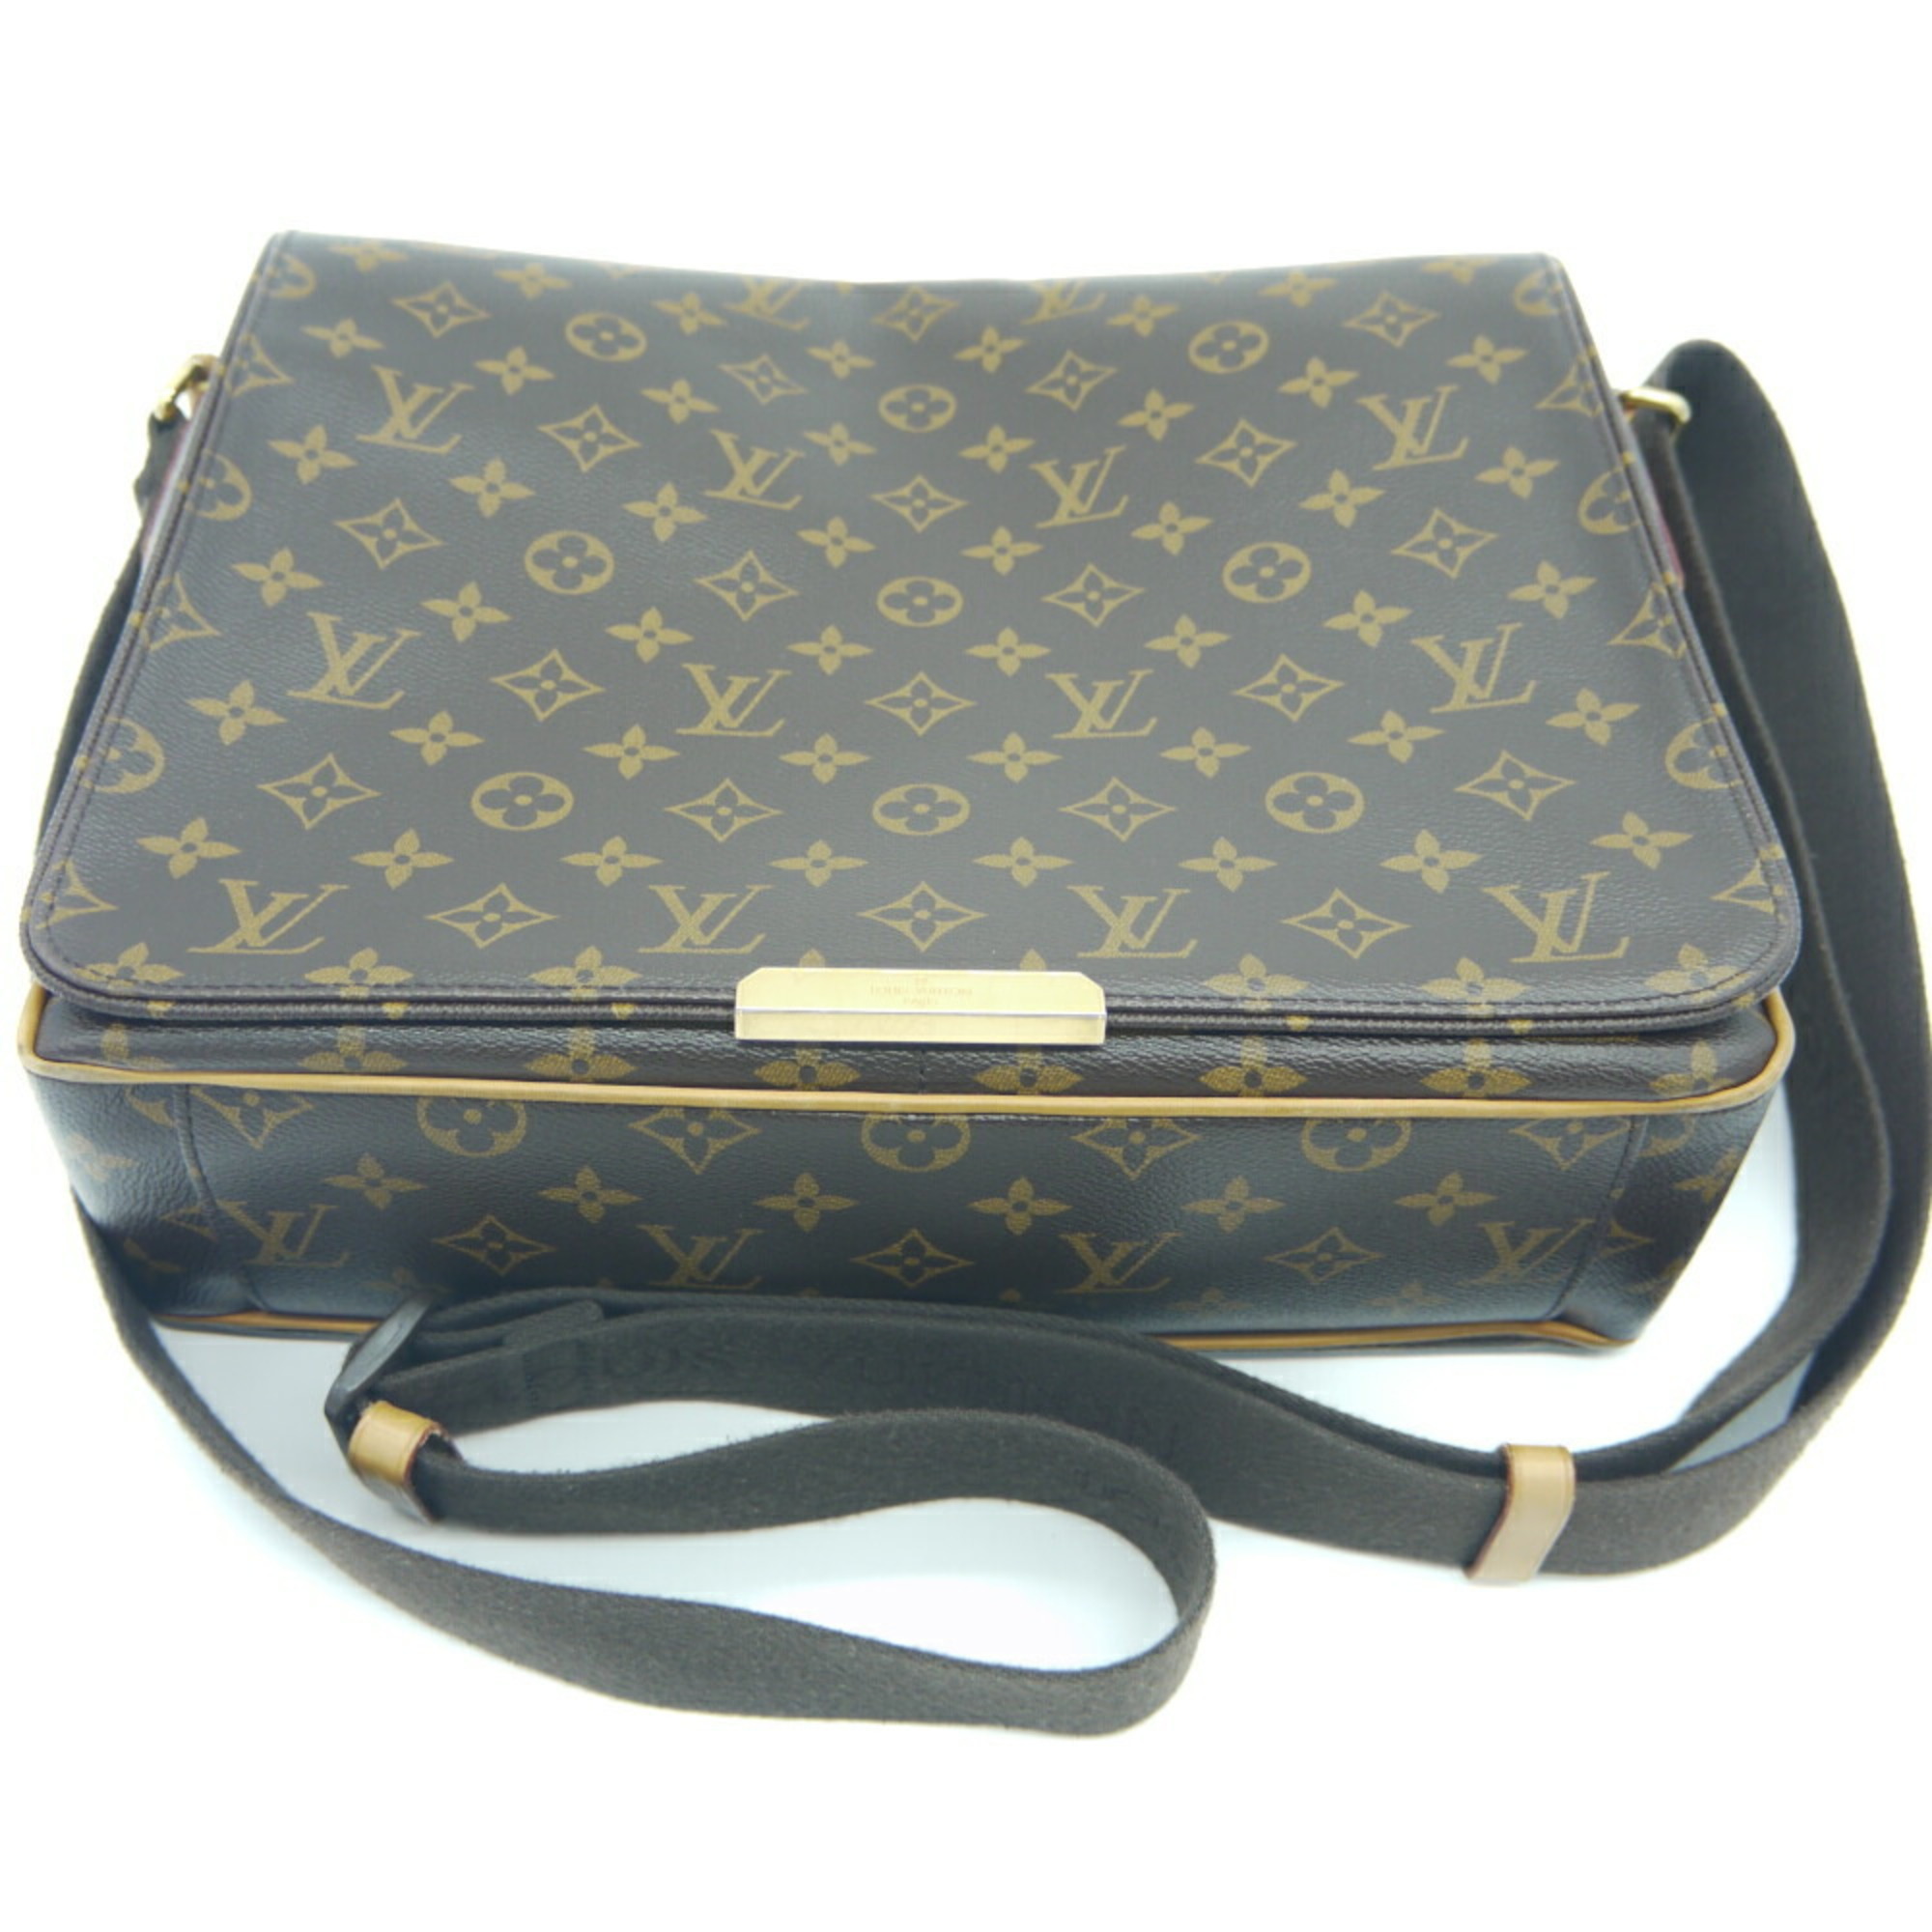 Authenticated used Louis Vuitton Louis Vuitton Valmy mm Monogram Shoulder Bag M40523, Adult Unisex, Size: (HxWxD): 26cm x 33cm x 10cm / 10.23'' x